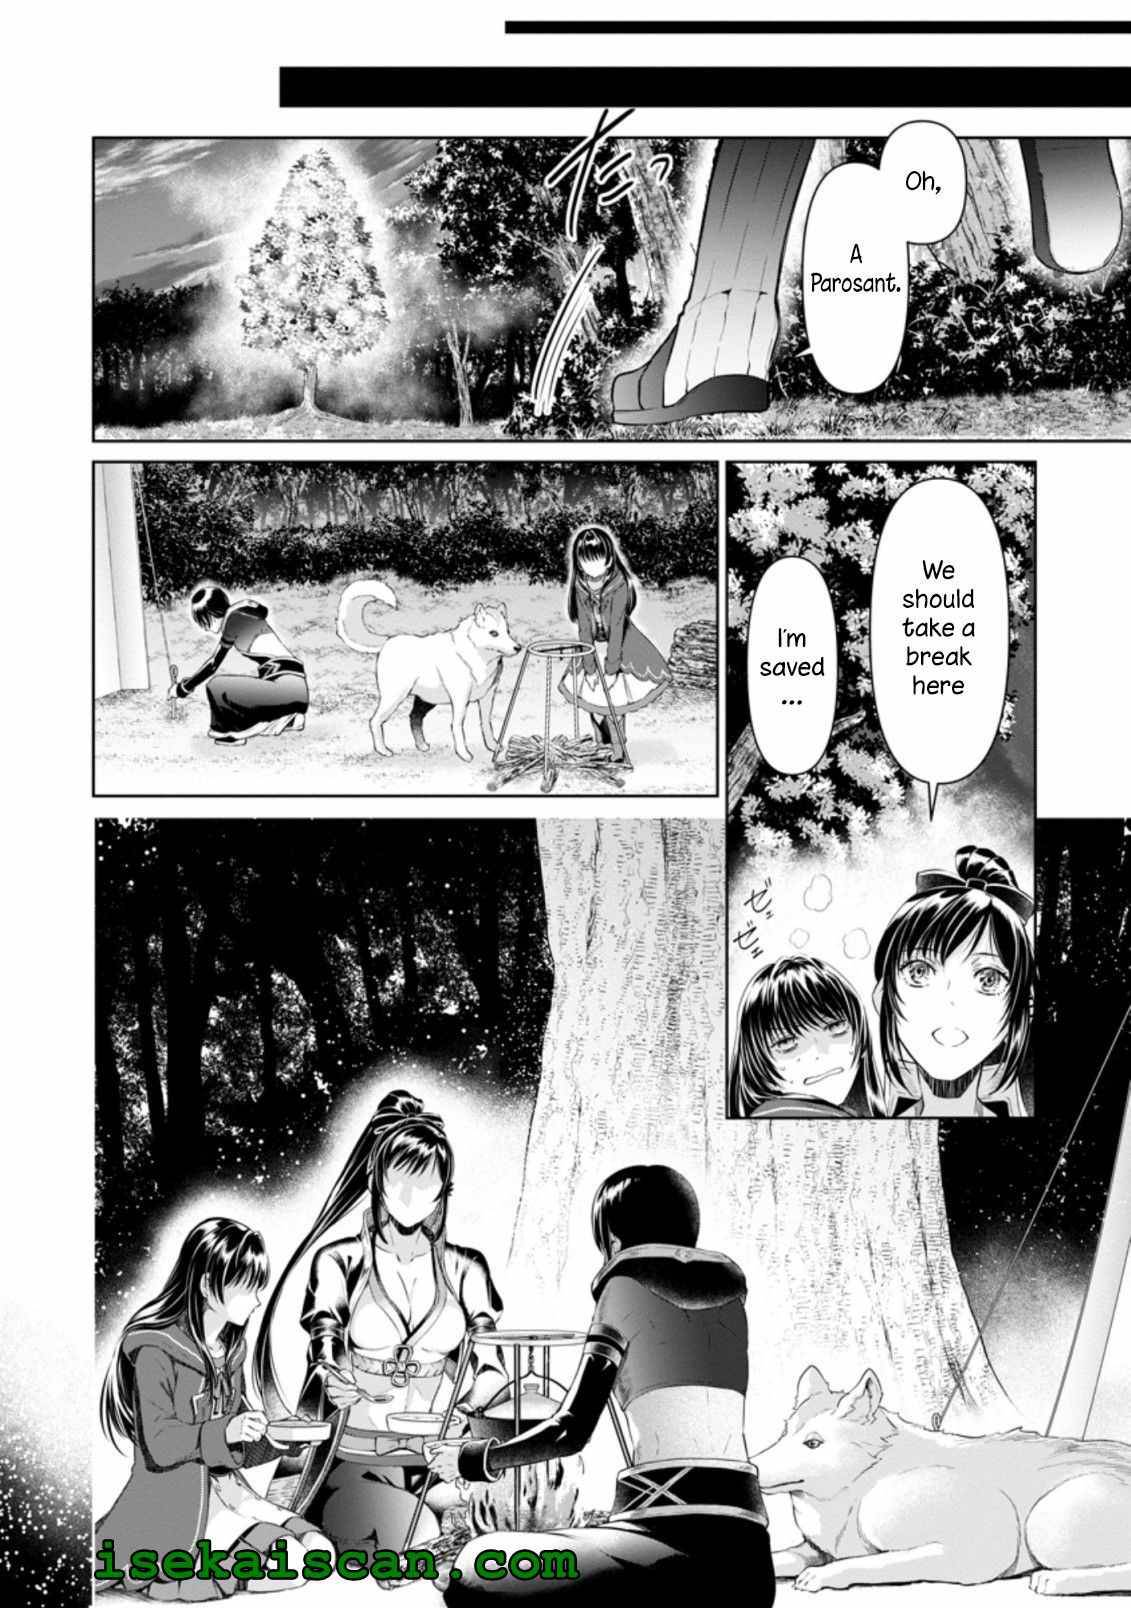 Damasare Uragirarete Shokei Sareta Watashi Ga… Dare wo Shinji Rareru To iu Nodesho - chapter 10.1 - #2